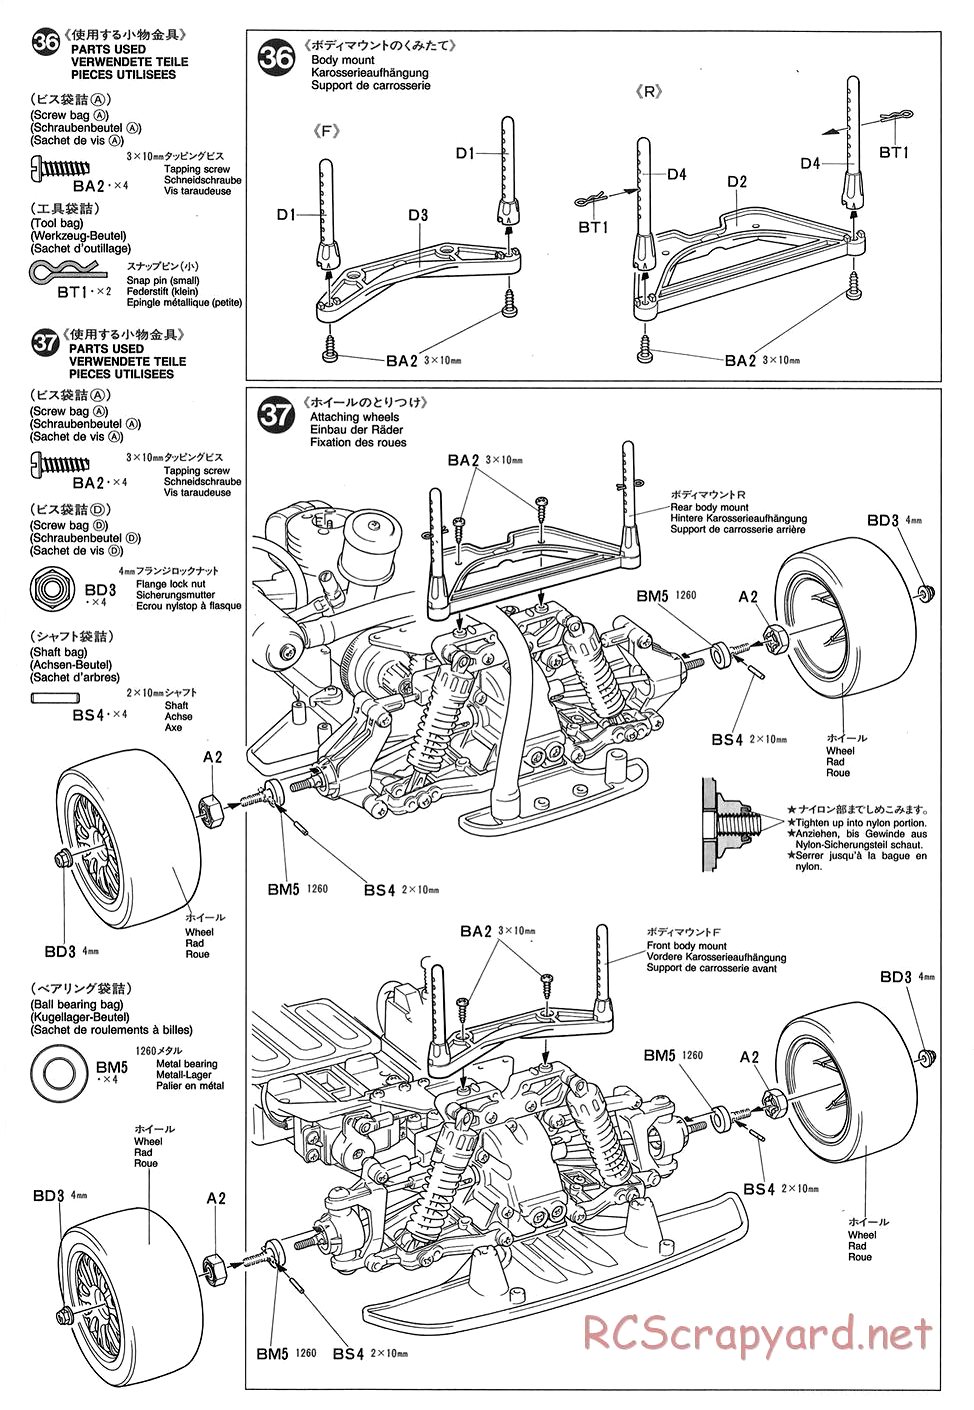 Tamiya - TGX Mk.1 Chassis - Manual - Page 18